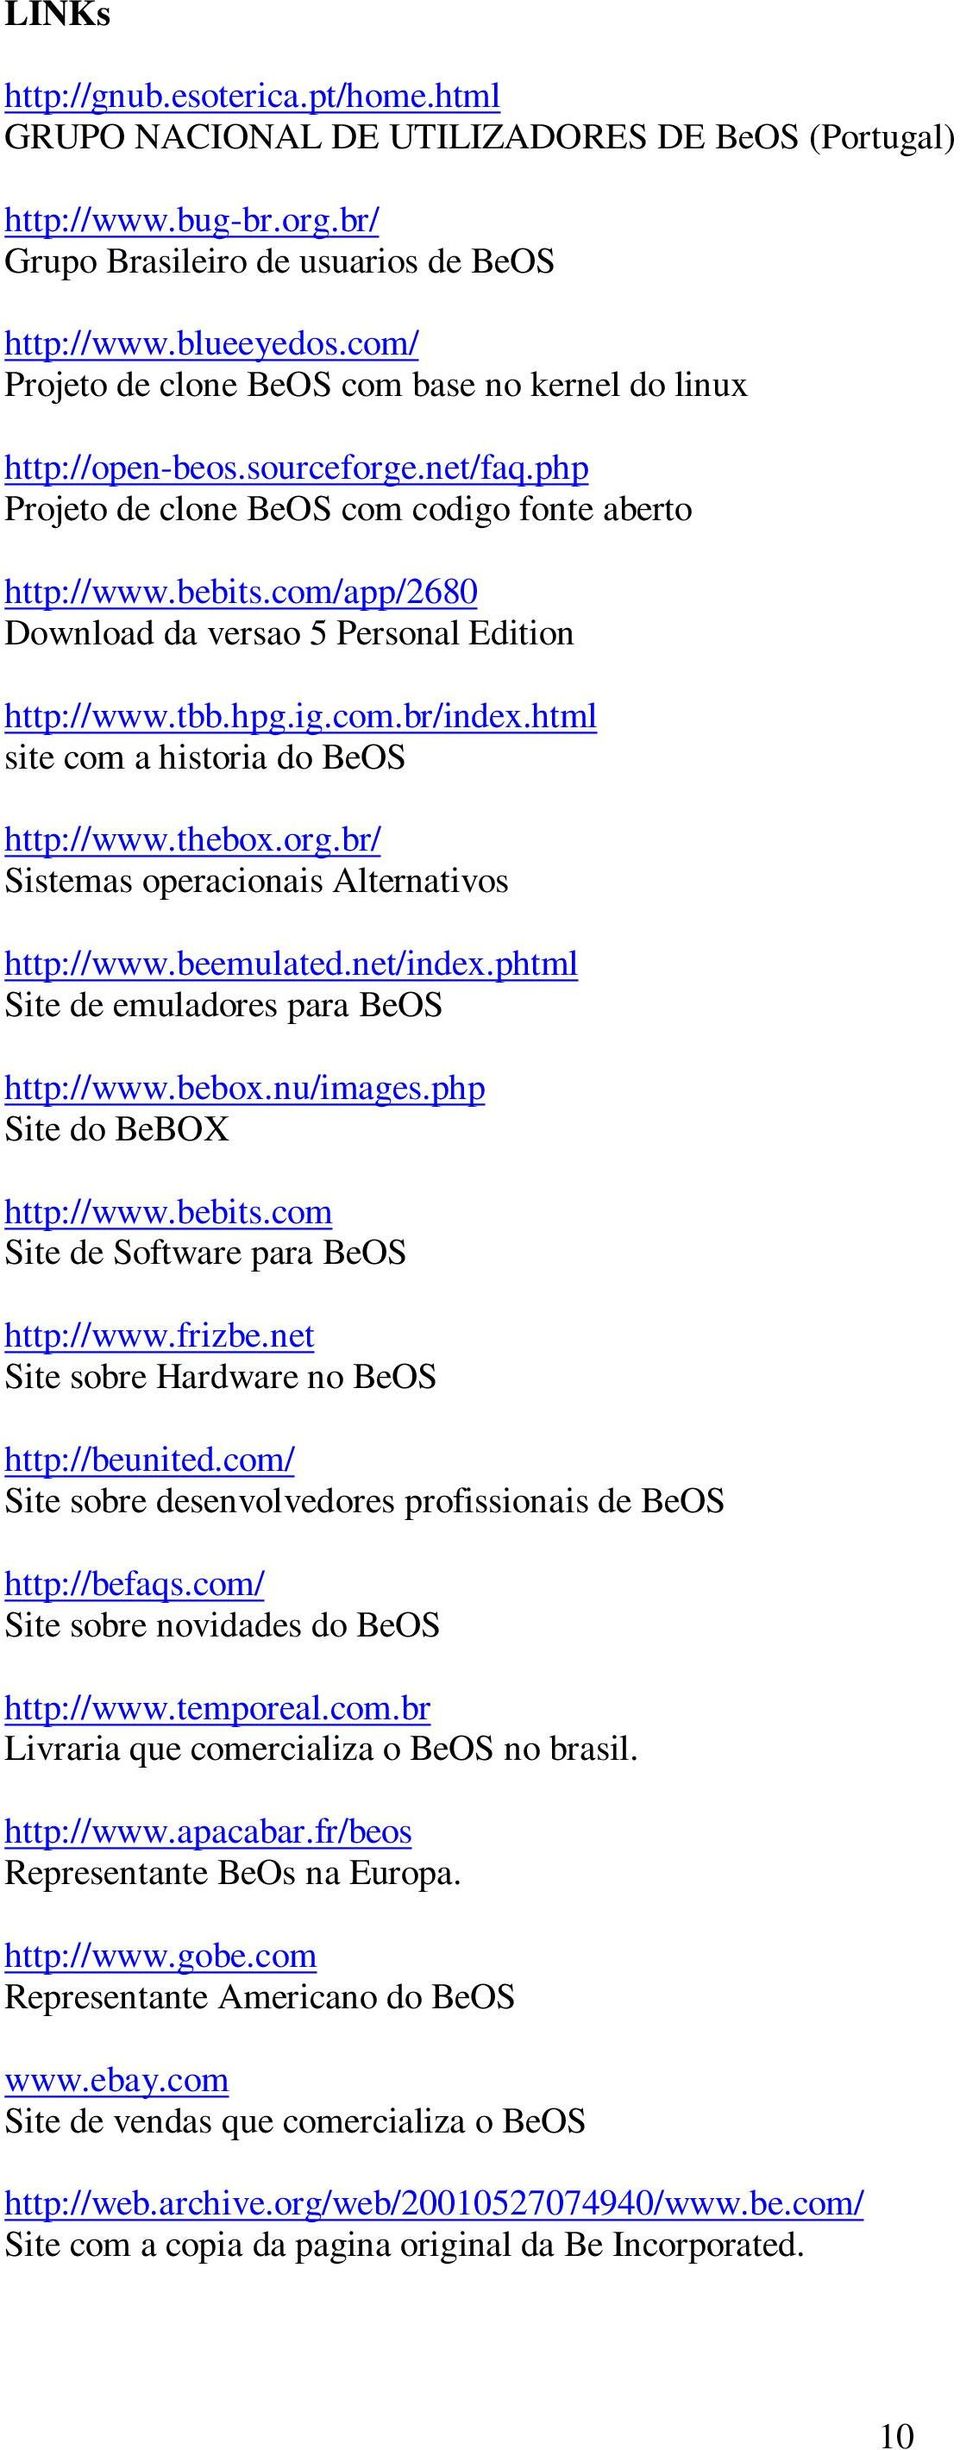 com/app/2680 Download da versao 5 Personal Edition http://www.tbb.hpg.ig.com.br/index.html site com a historia do BeOS http://www.thebox.org.br/ Sistemas operacionais Alternativos http://www.